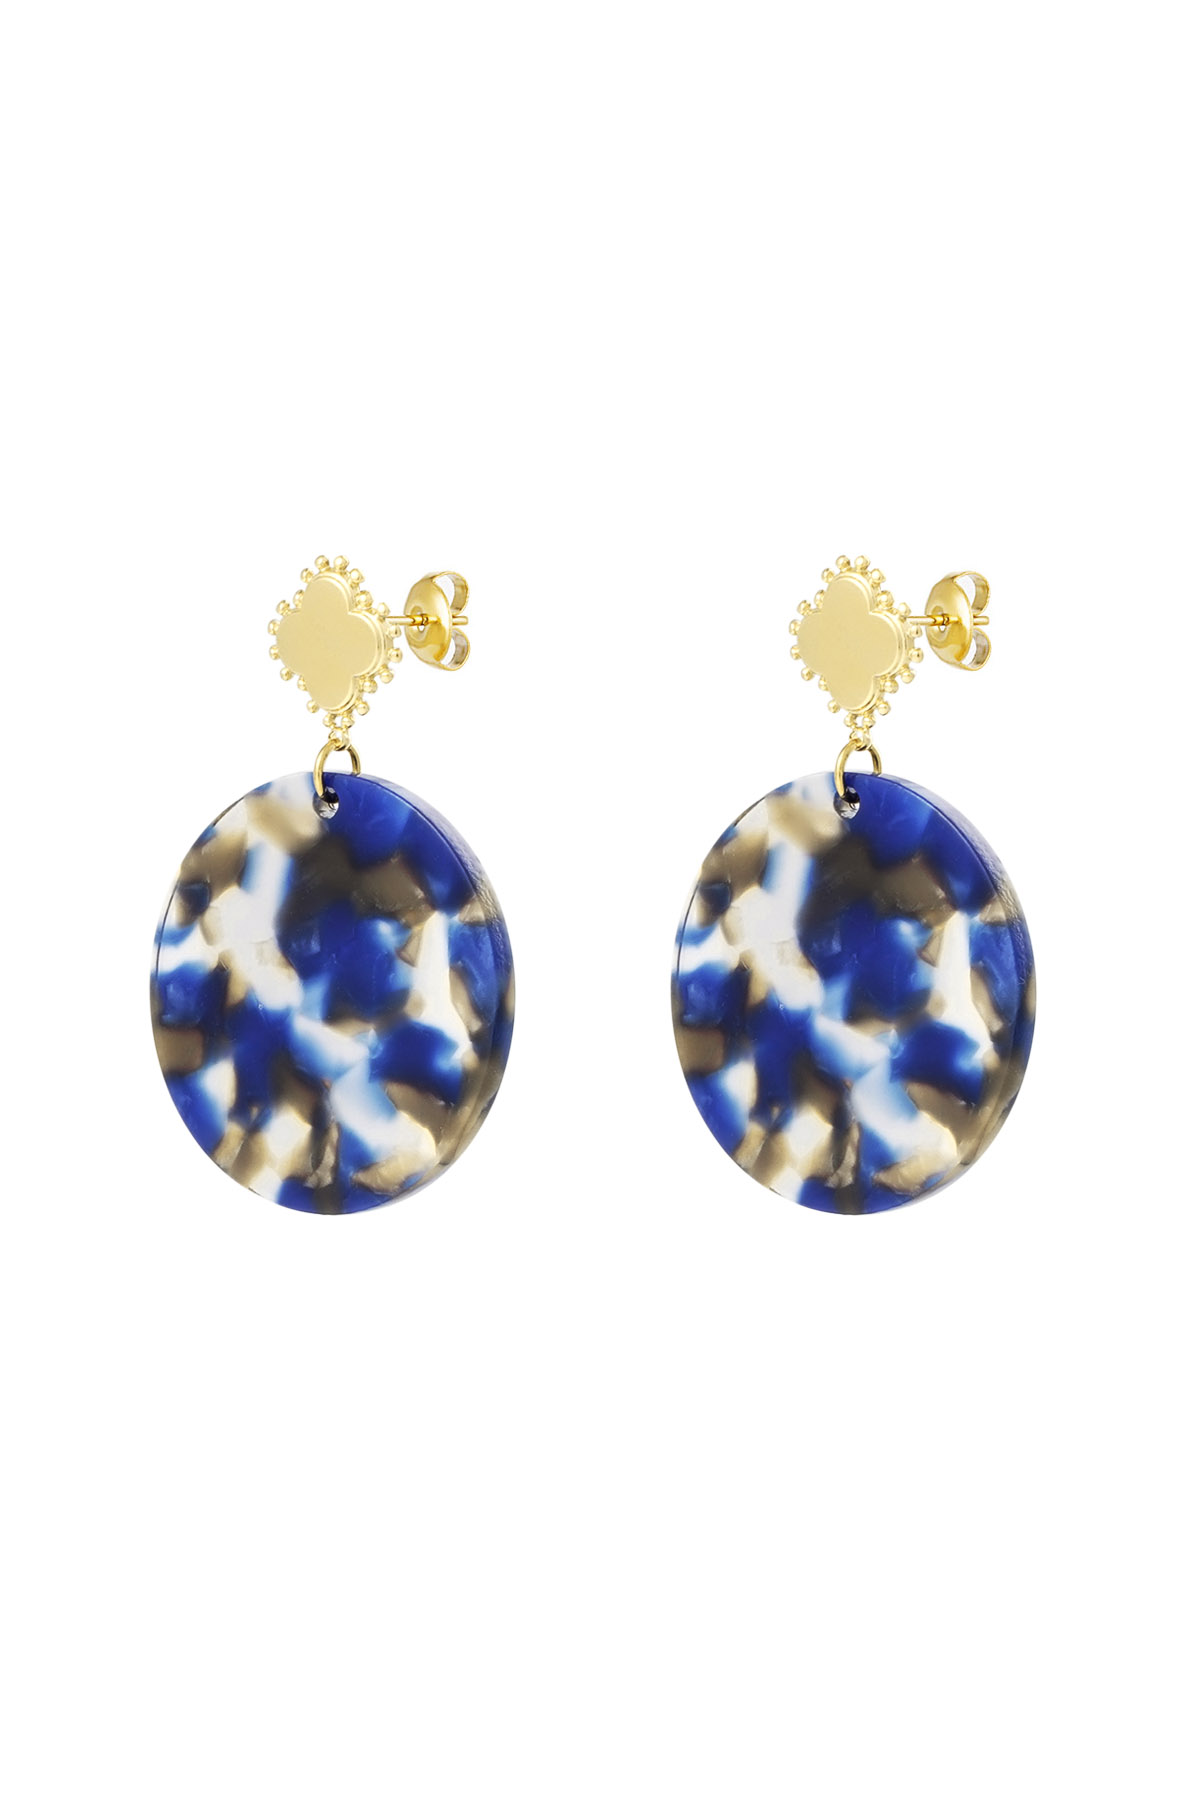 Ohrringe Kleeblatt mit Kreis - Gold/Blau h5 